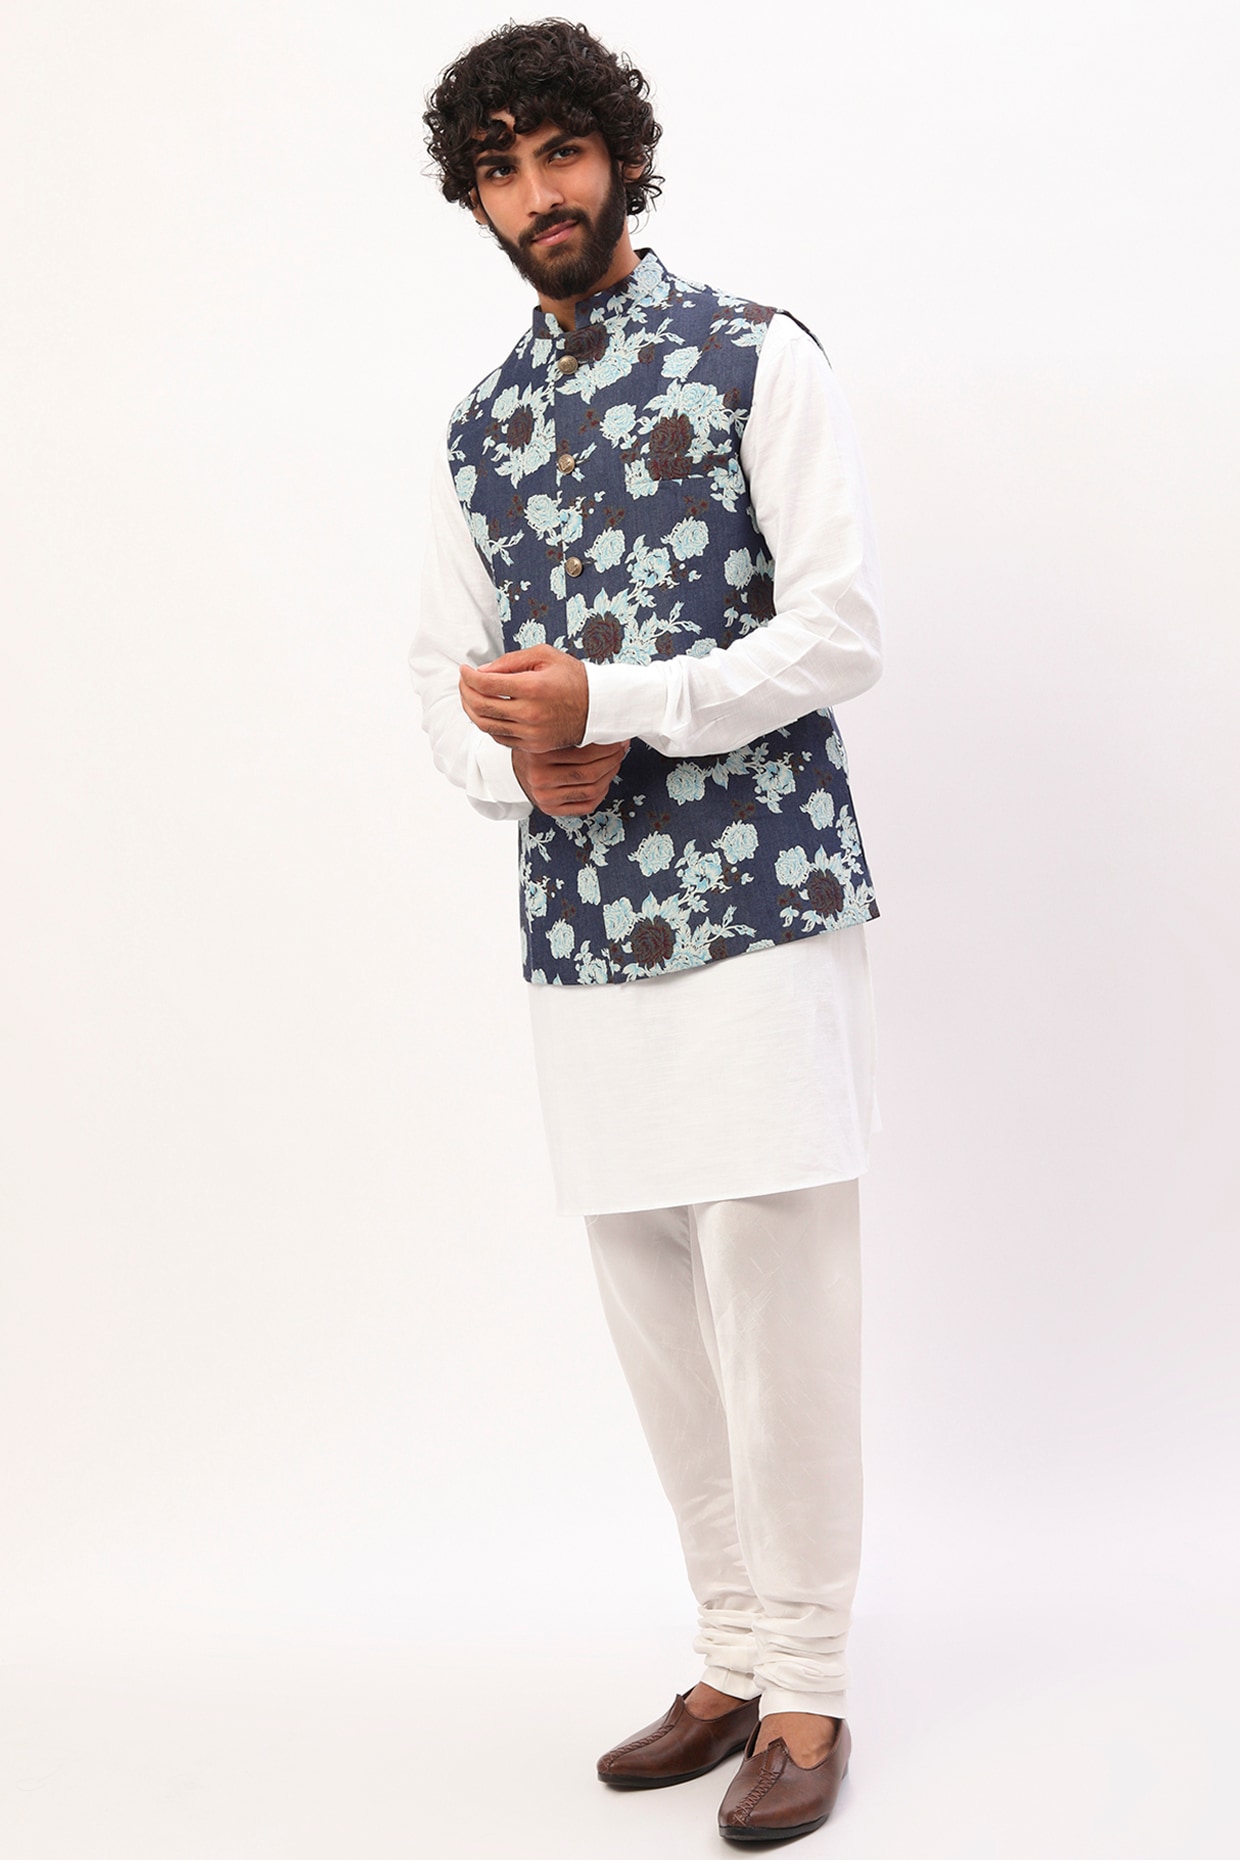 PatPat Toddler Coat for Boys Girls Jackets Plaid India | Ubuy